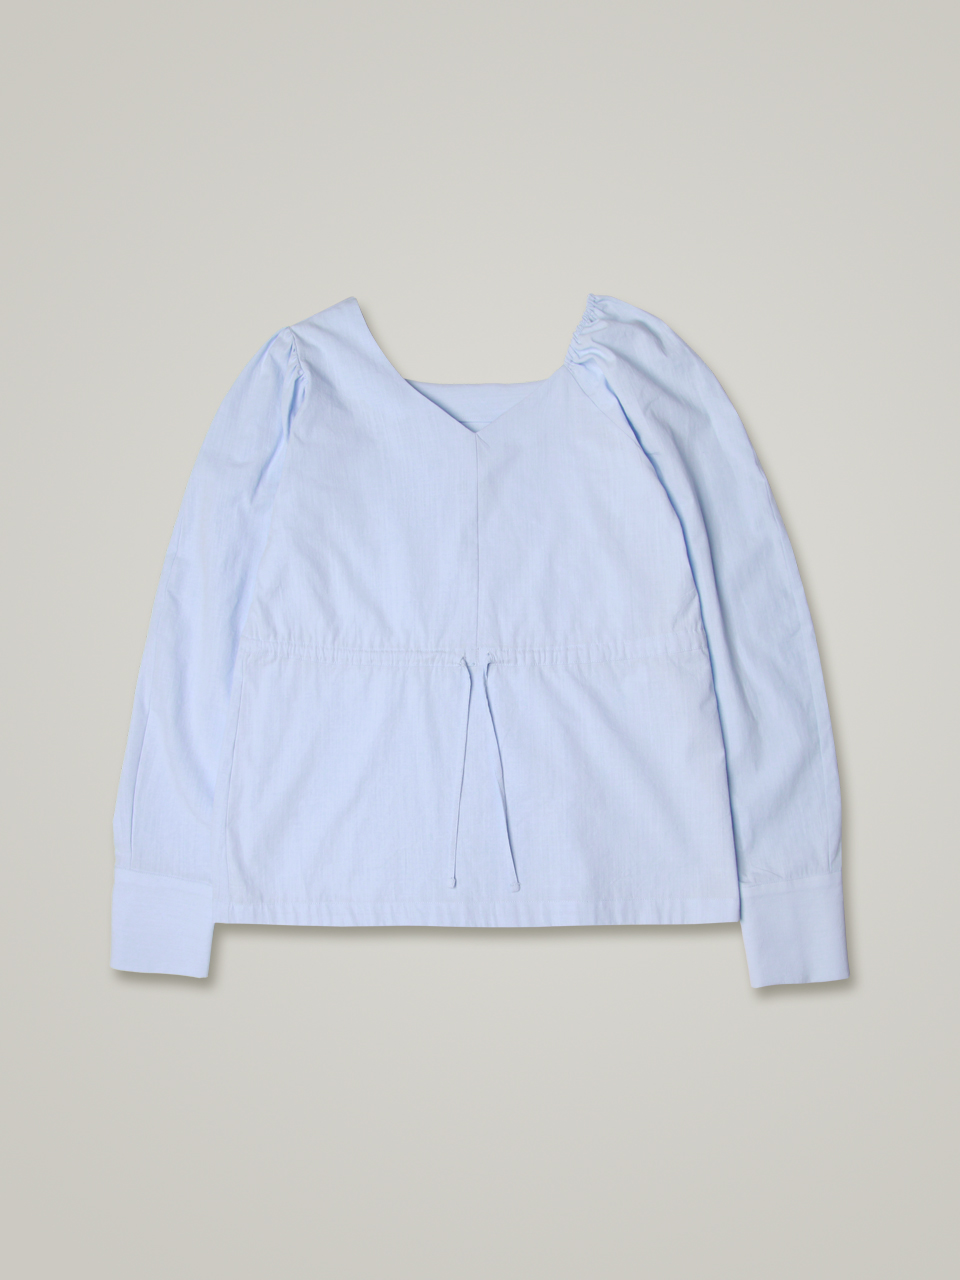 comos 793 asymmetric blouse (powder blue)